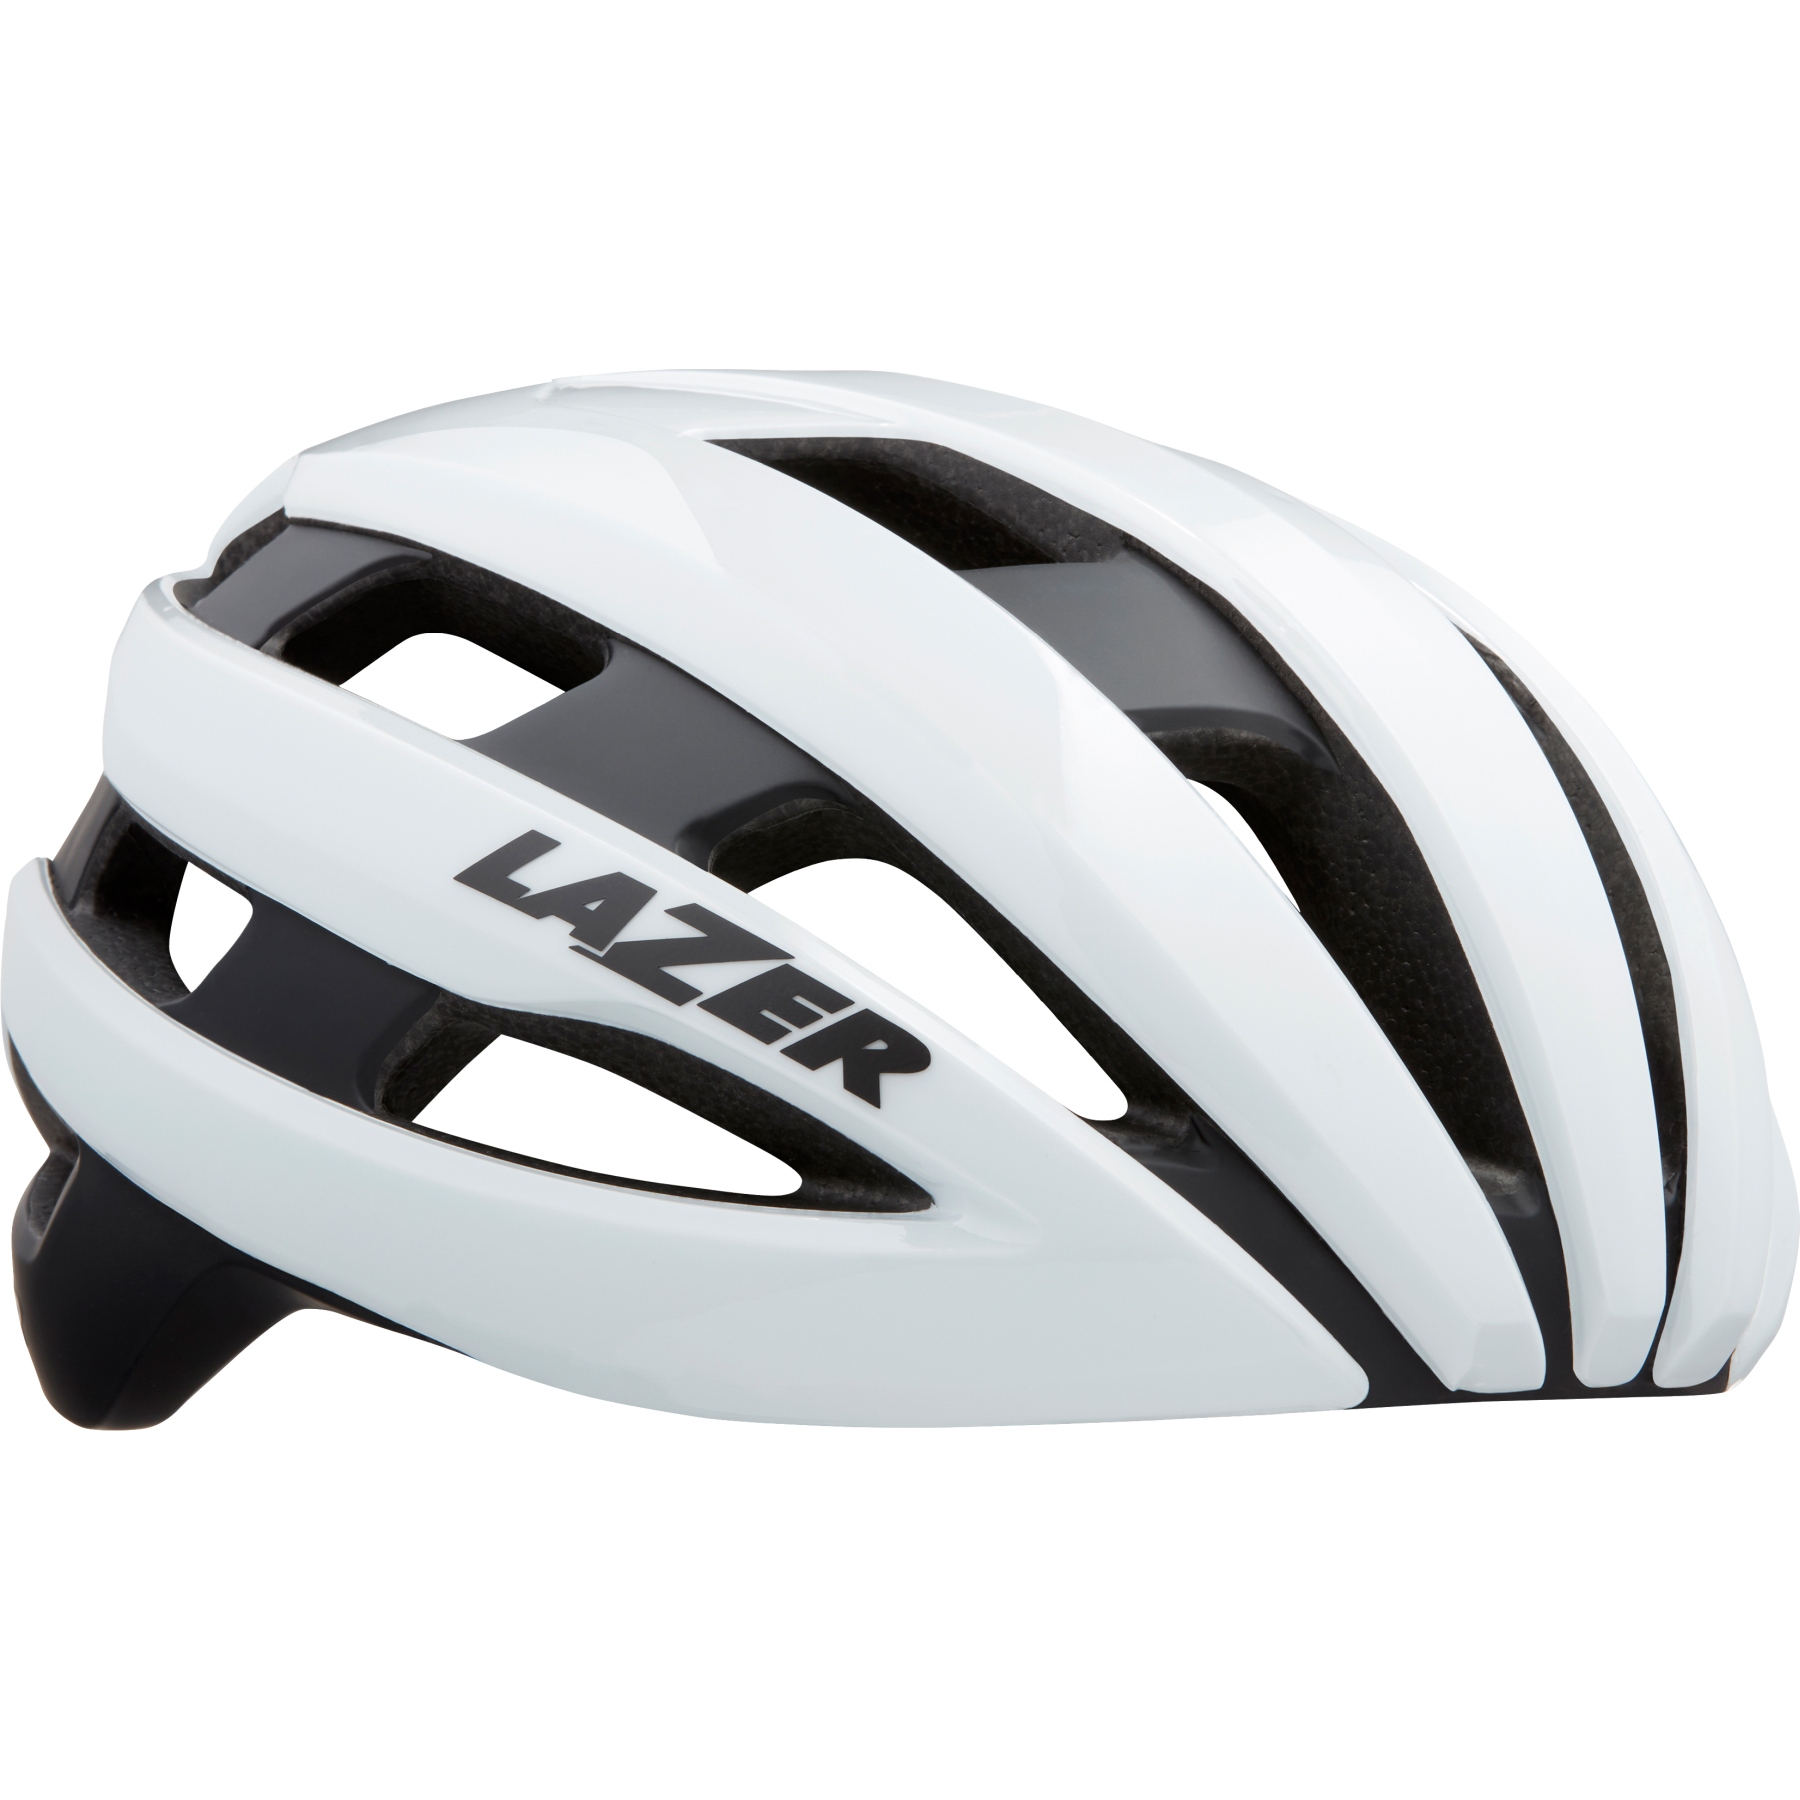 Produktbild von Lazer Sphere Fahrradhelm - schwarz/weiß